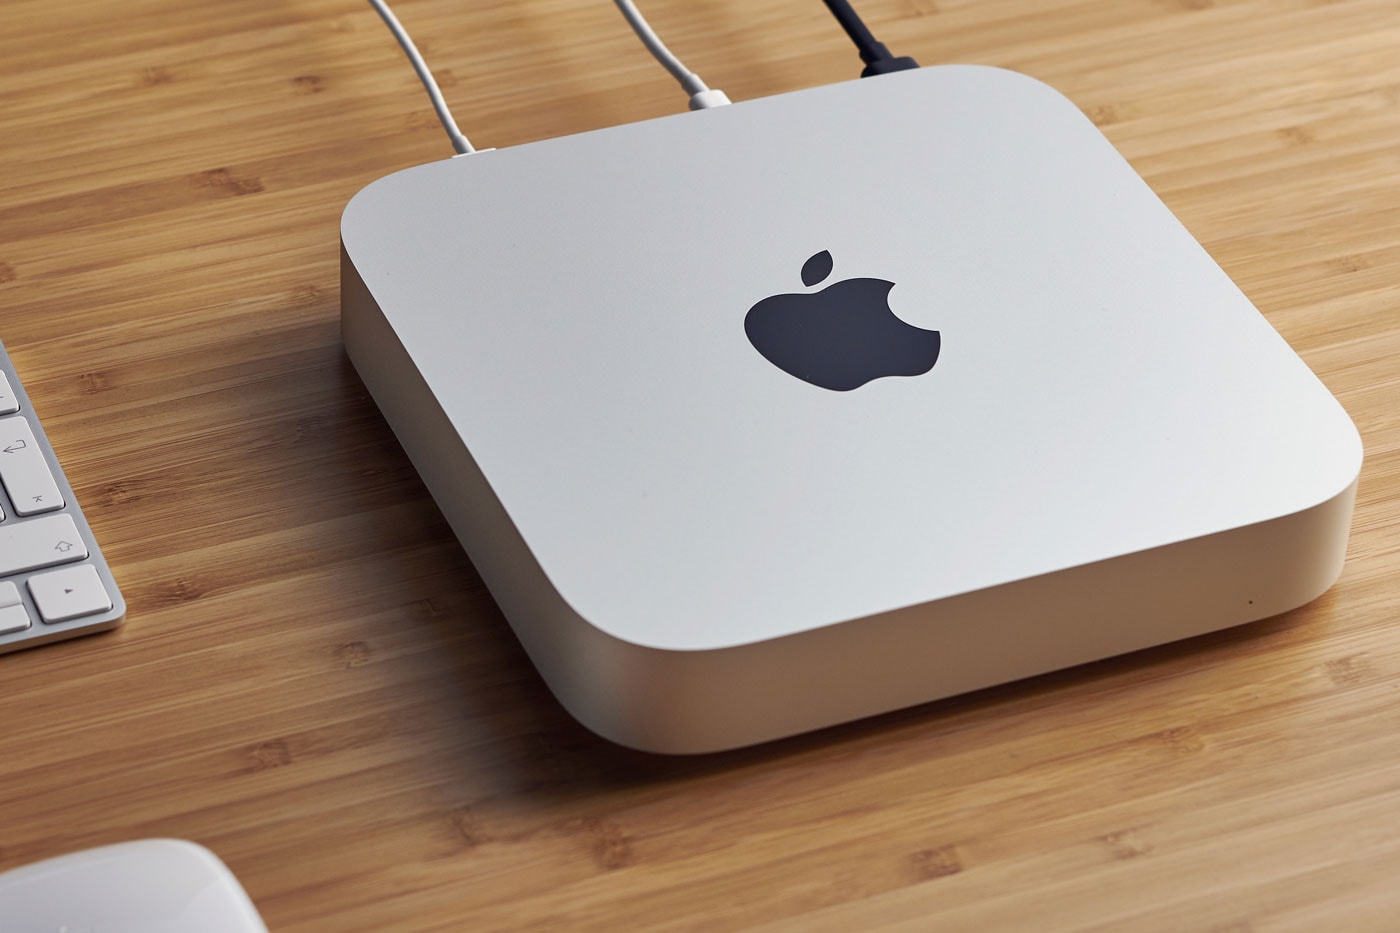 マックミニをベースとした新型デバイス マックスタジオが登場か Apple Rumored To Develop "Mac Studio" Desktop With 7K Display mac mini m1 max processor afoordable apple monitor 